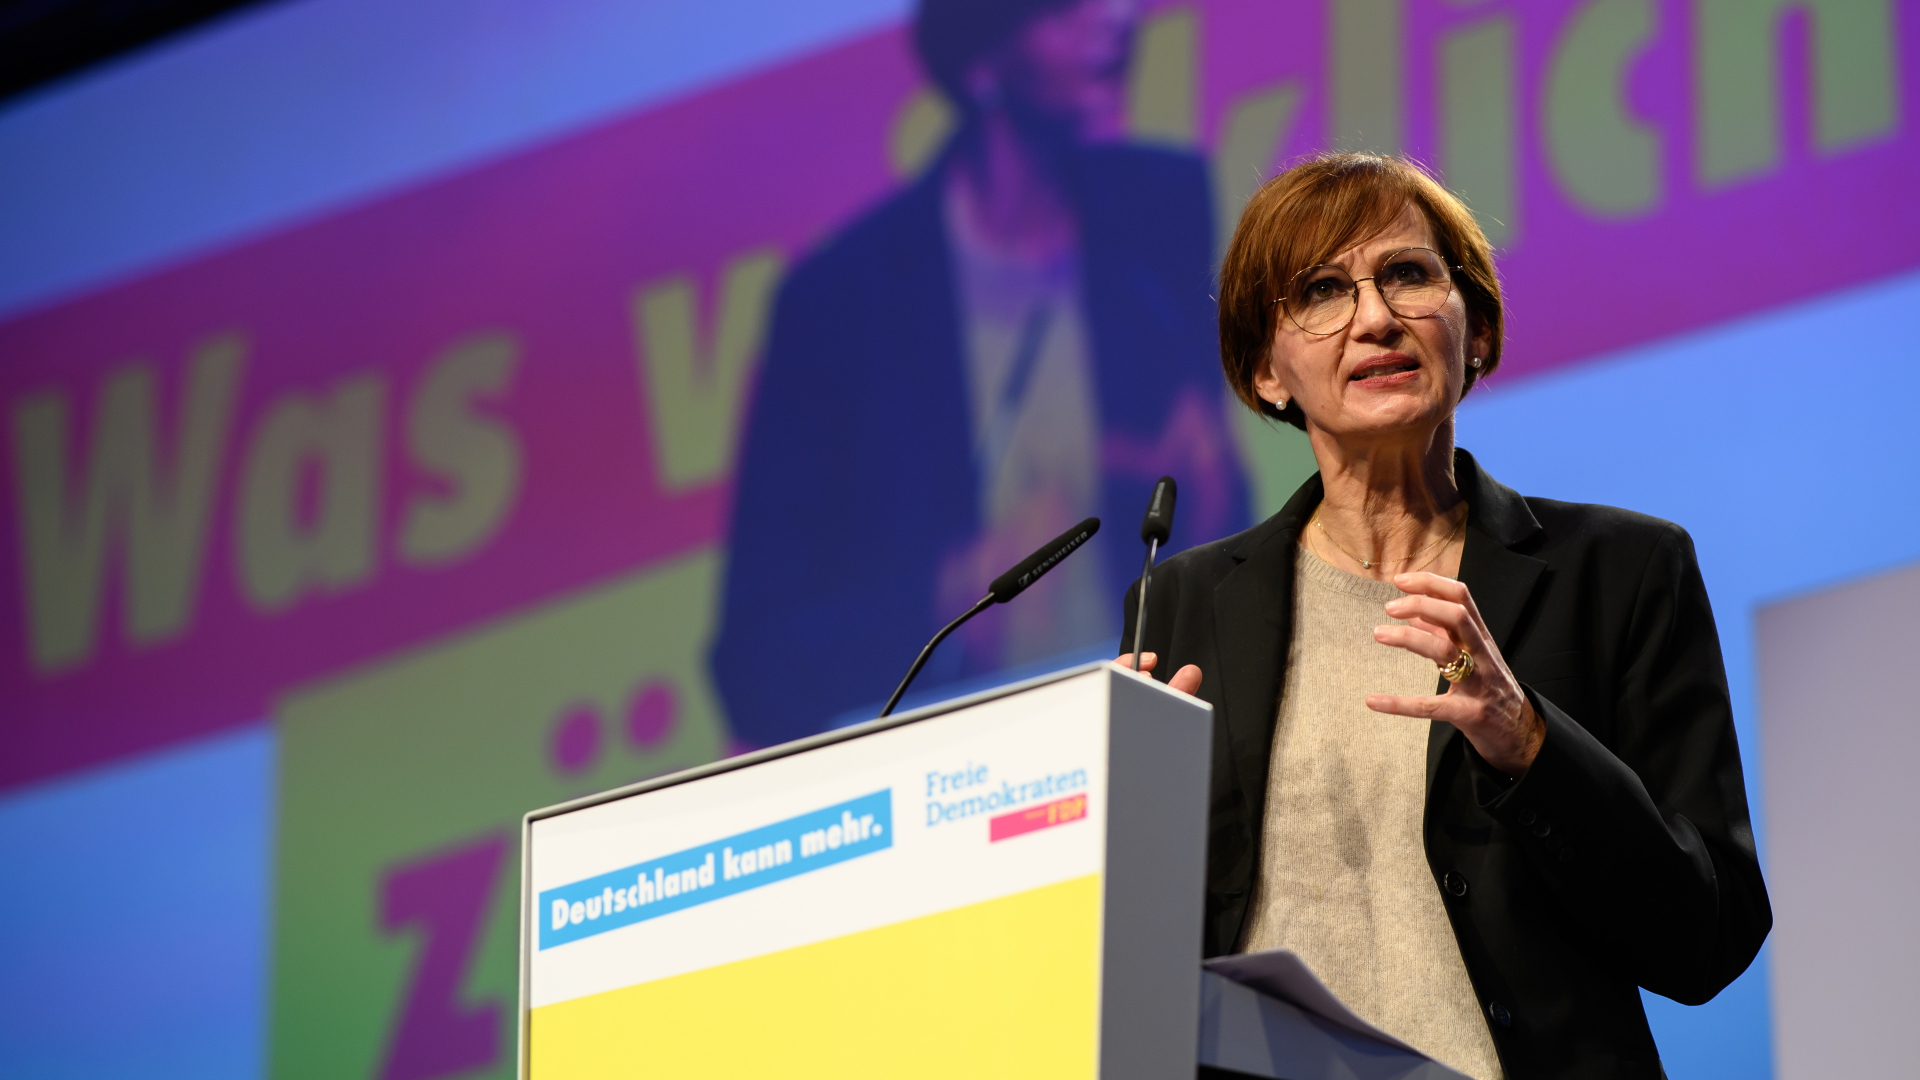  Bettina Stark-Watzinger spricht beim digitalen Parteitag der FDP Hessen | dpa